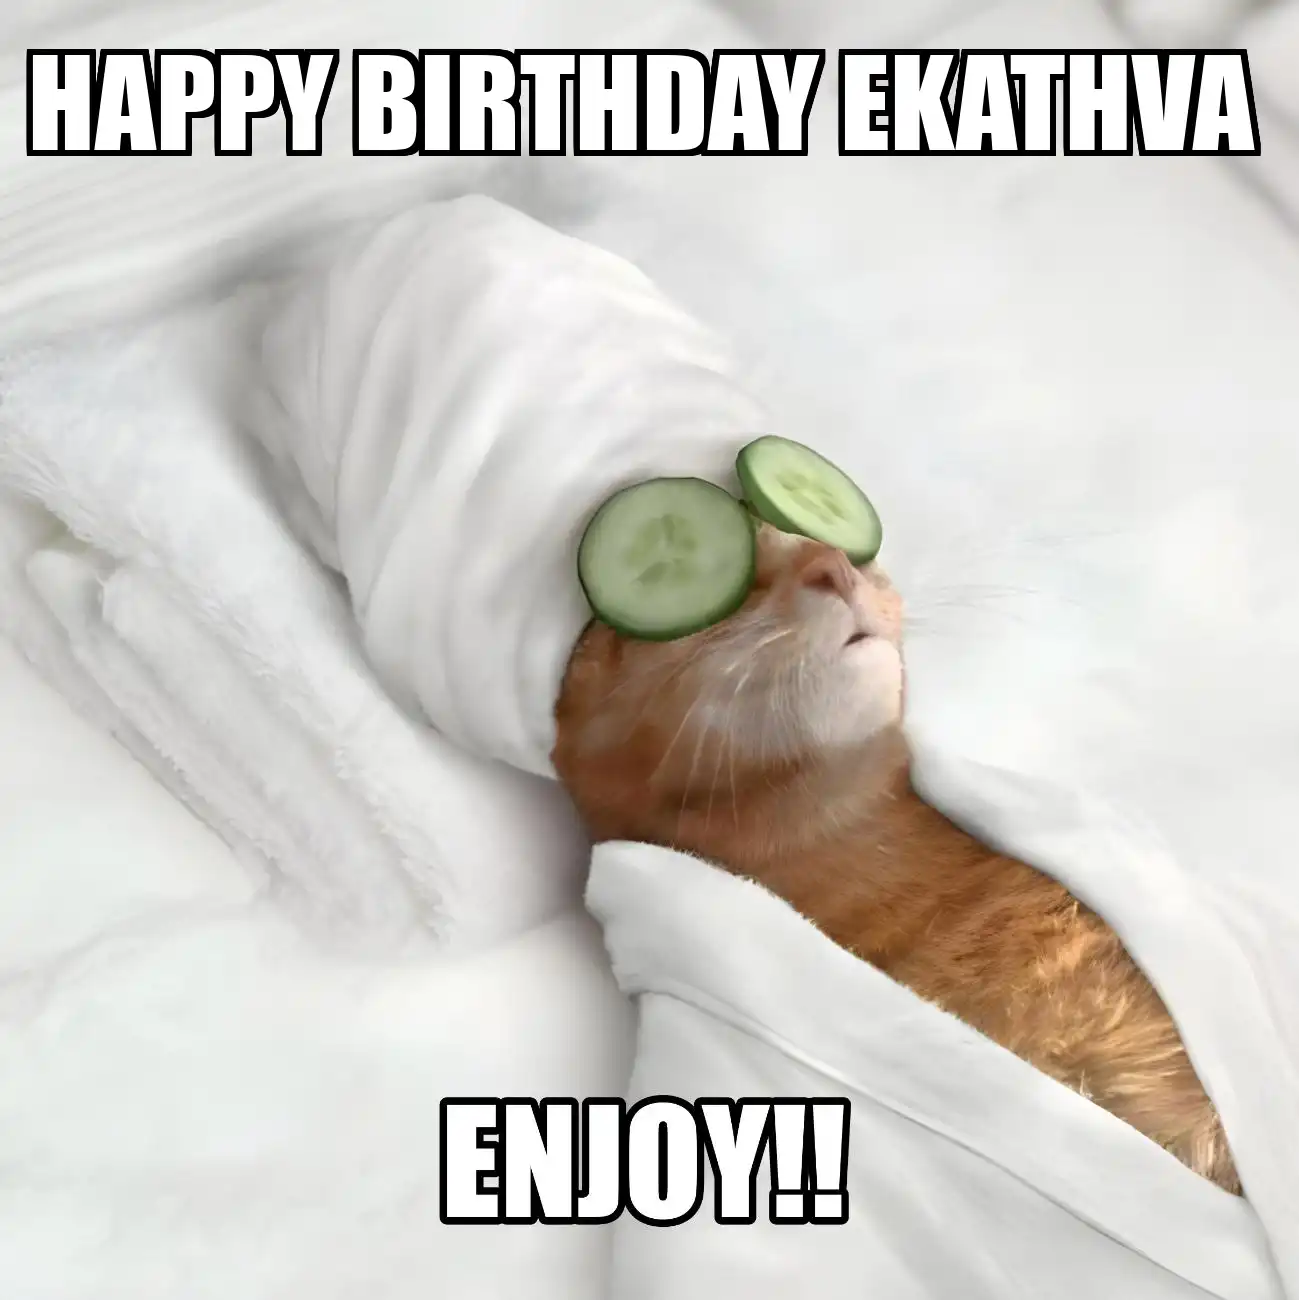 Happy Birthday Ekathva Enjoy Cat Meme